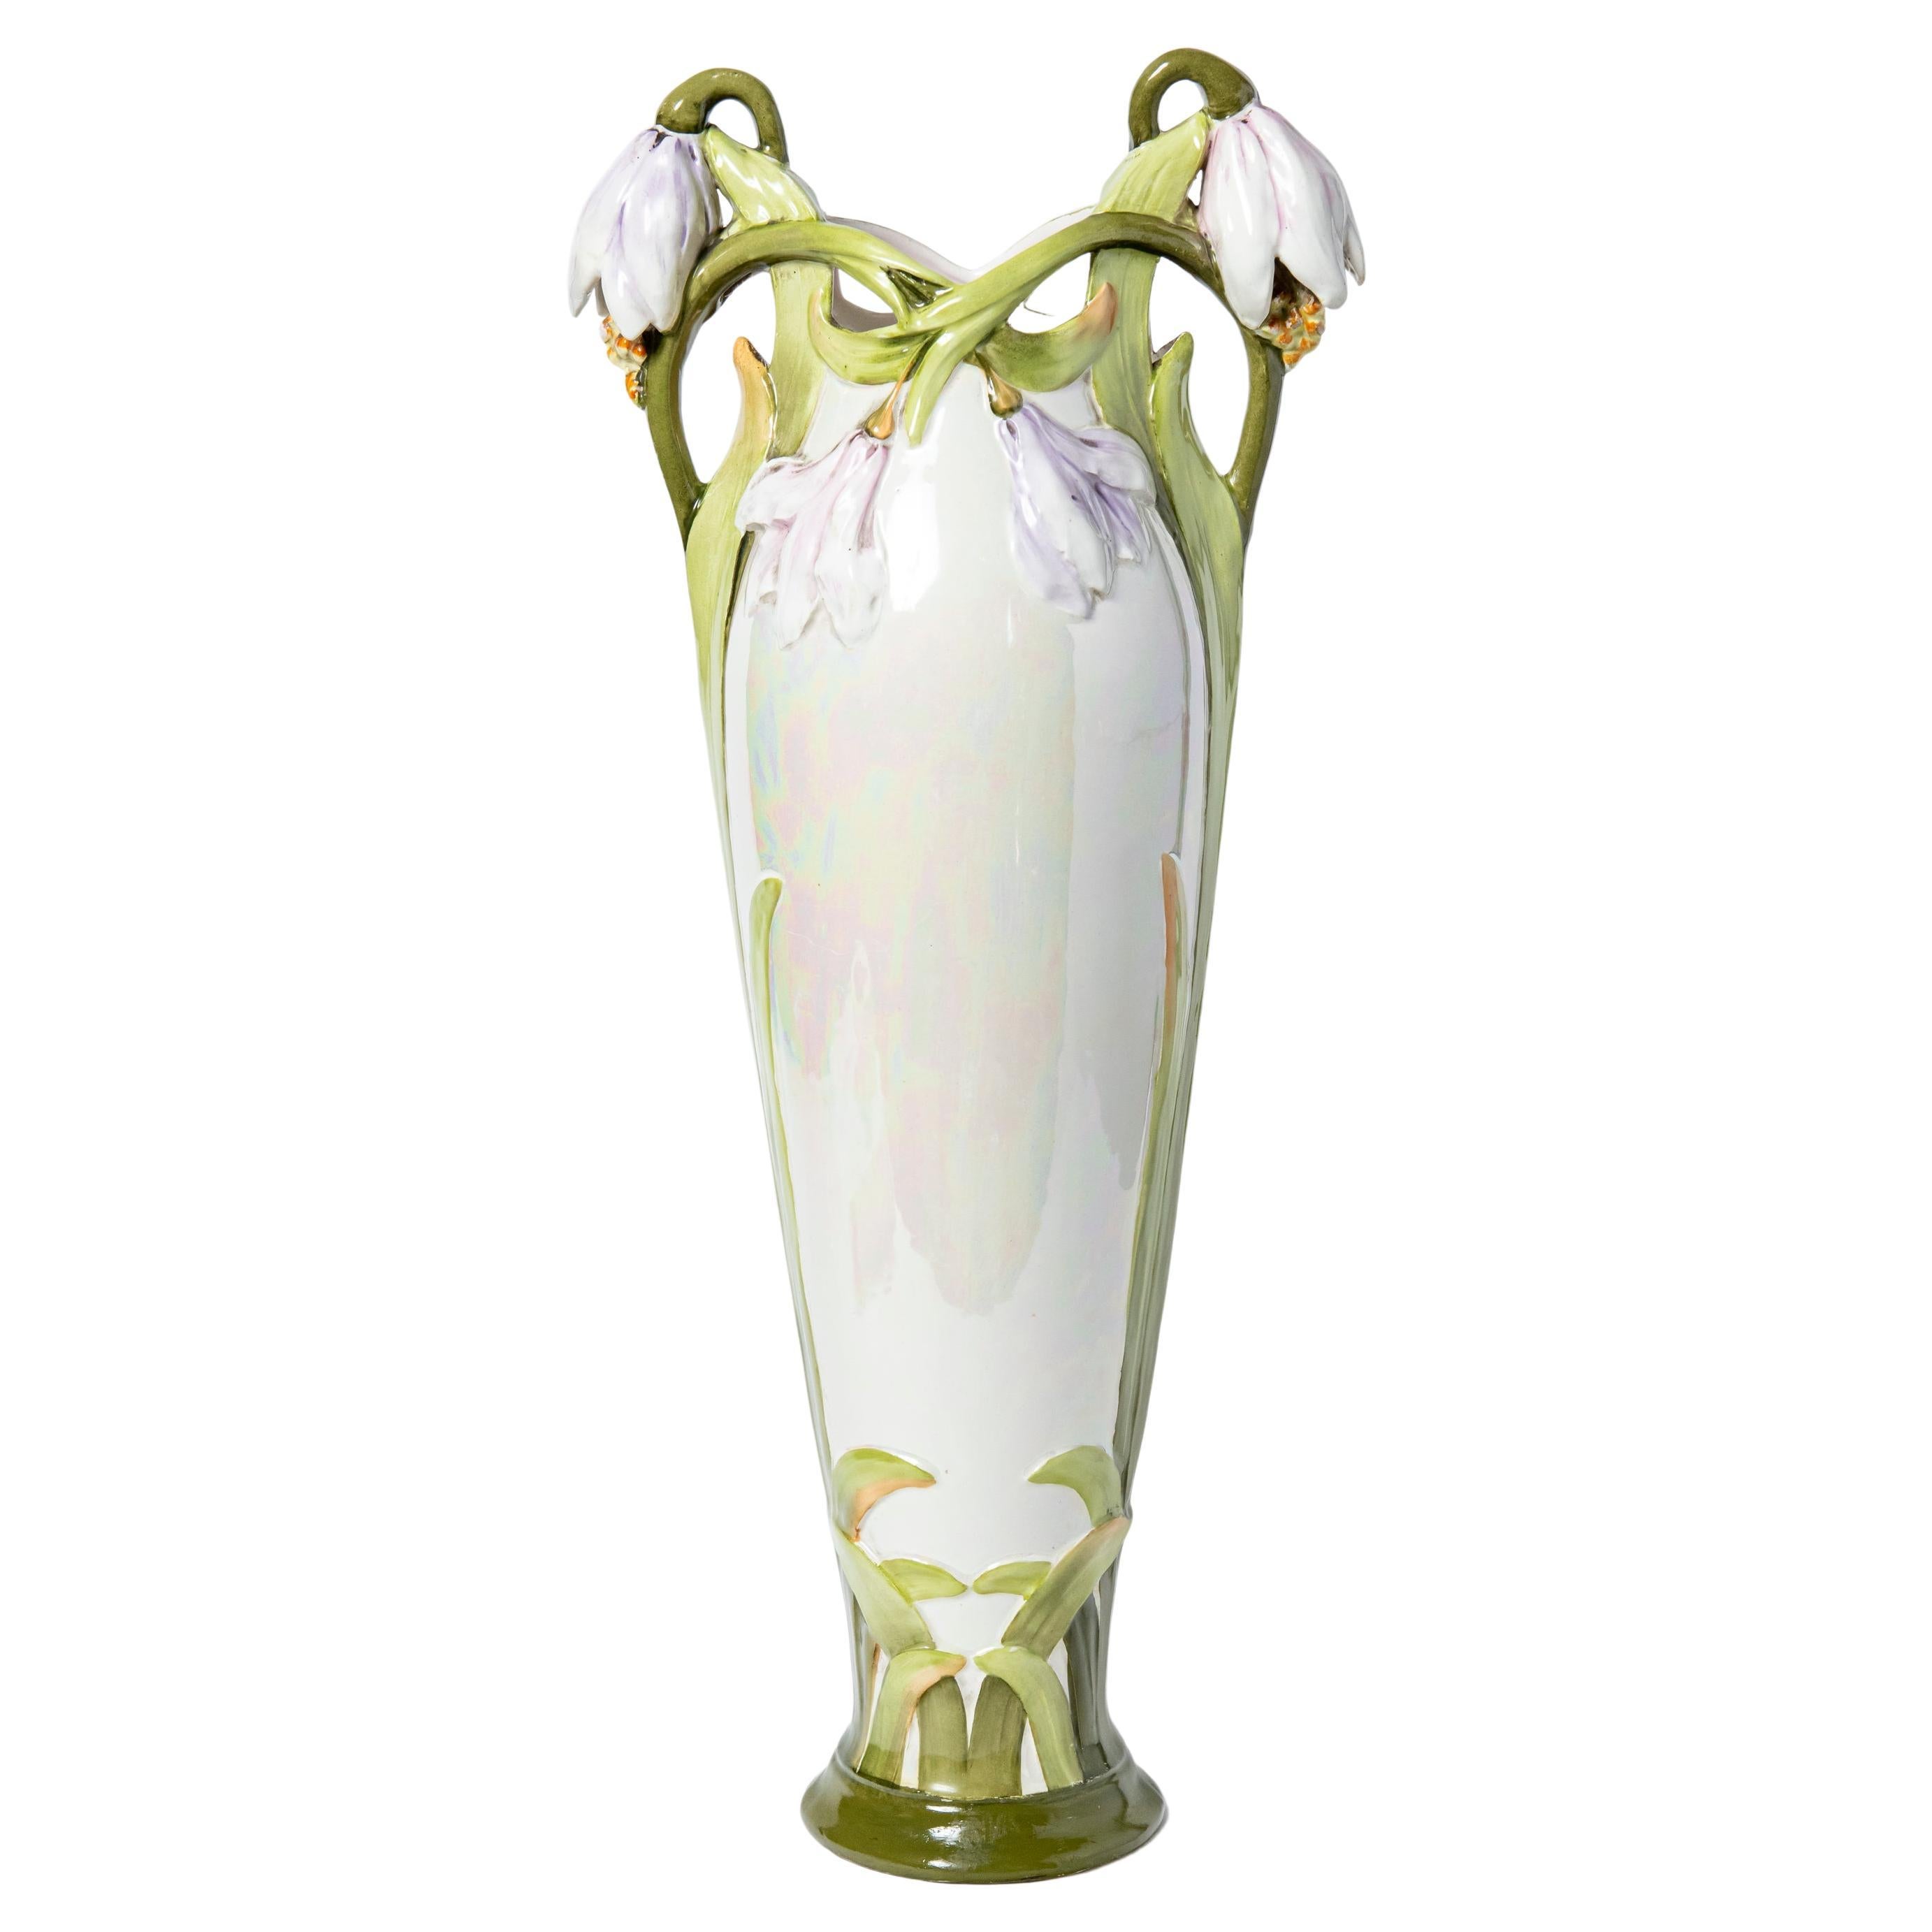  Vase en céramique émaillée, période Art nouveau, France, début du 20e siècle. en vente